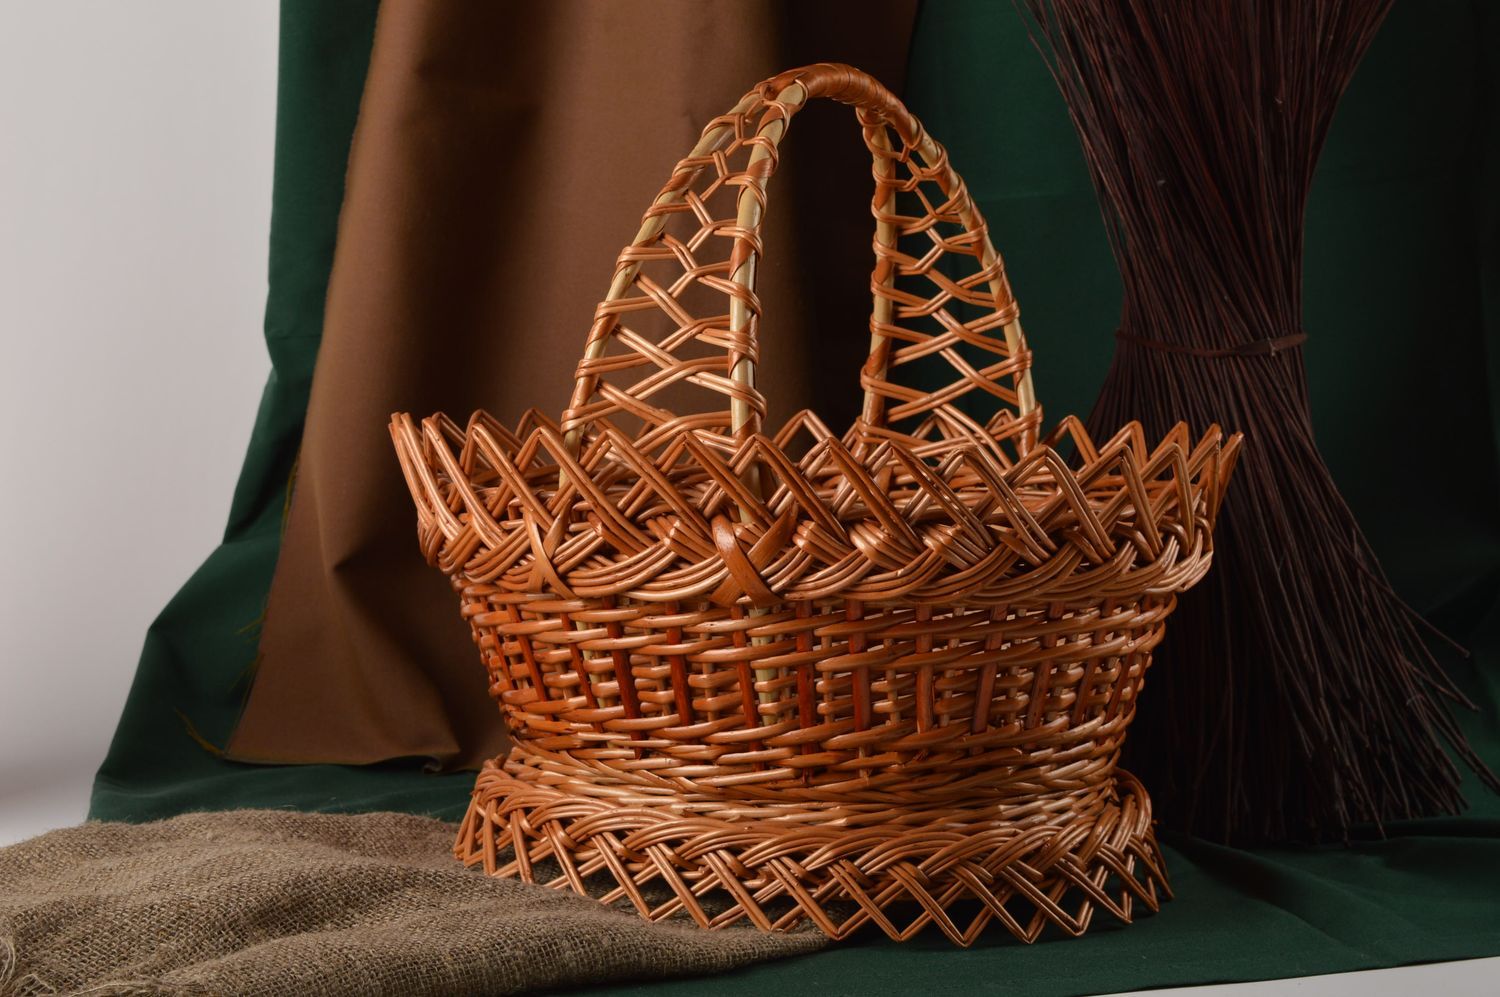 Подарок женщине ручной работы плетеная корзина ажурная изделие из лозы фото 1